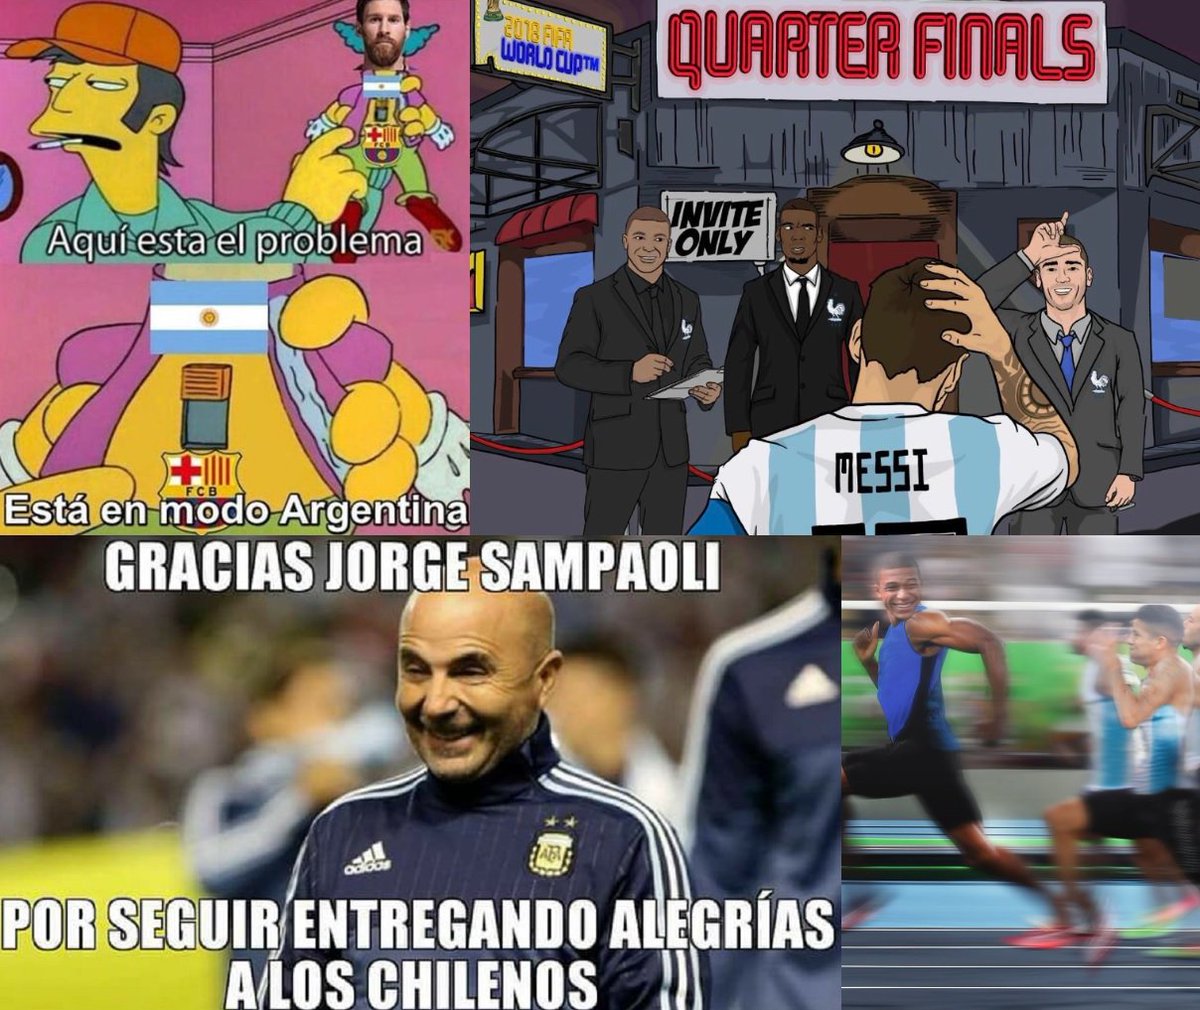 Memes Apuntan A Messi Y Sampaoli Tras Fracaso De Argentina